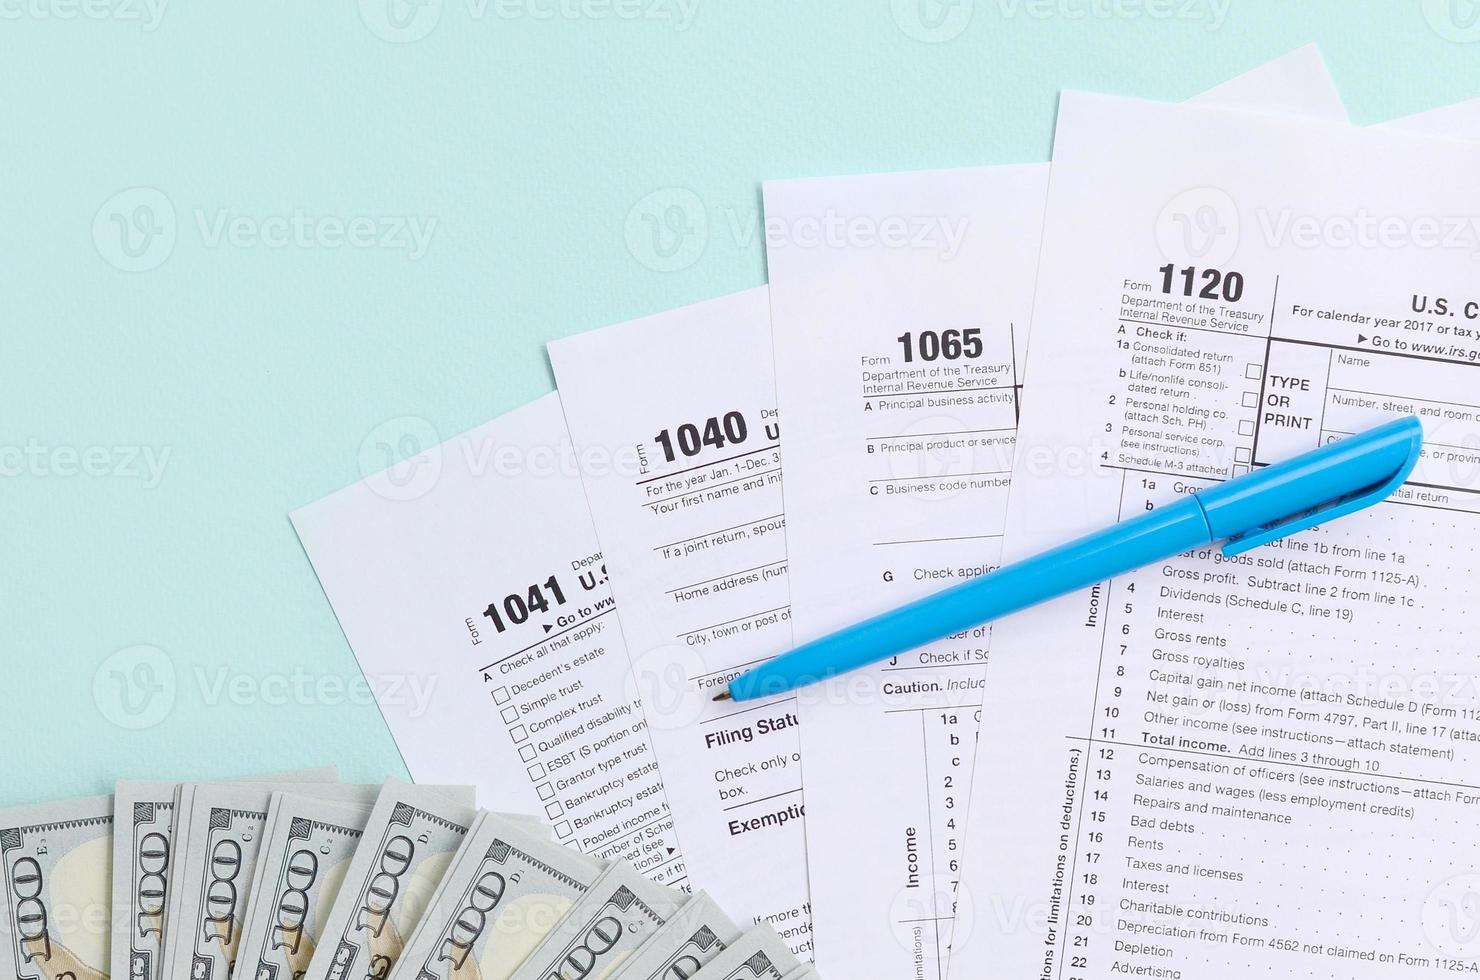 les formulaires fiscaux se trouvent près de billets de cent dollars et d'un stylo bleu sur fond bleu clair. déclaration d'impôt sur le revenu photo